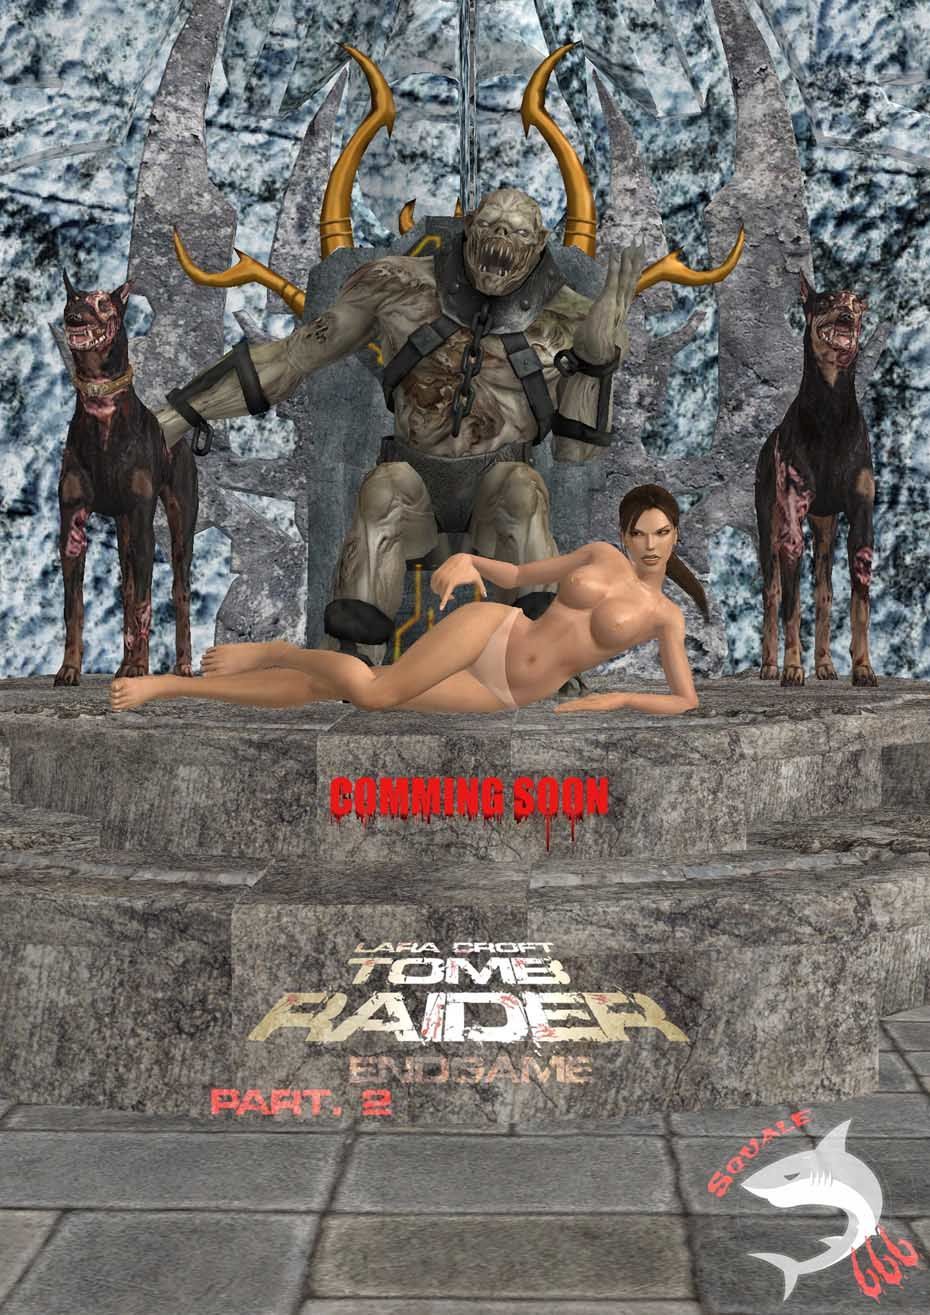 Tomb Raider Endgame (no text)